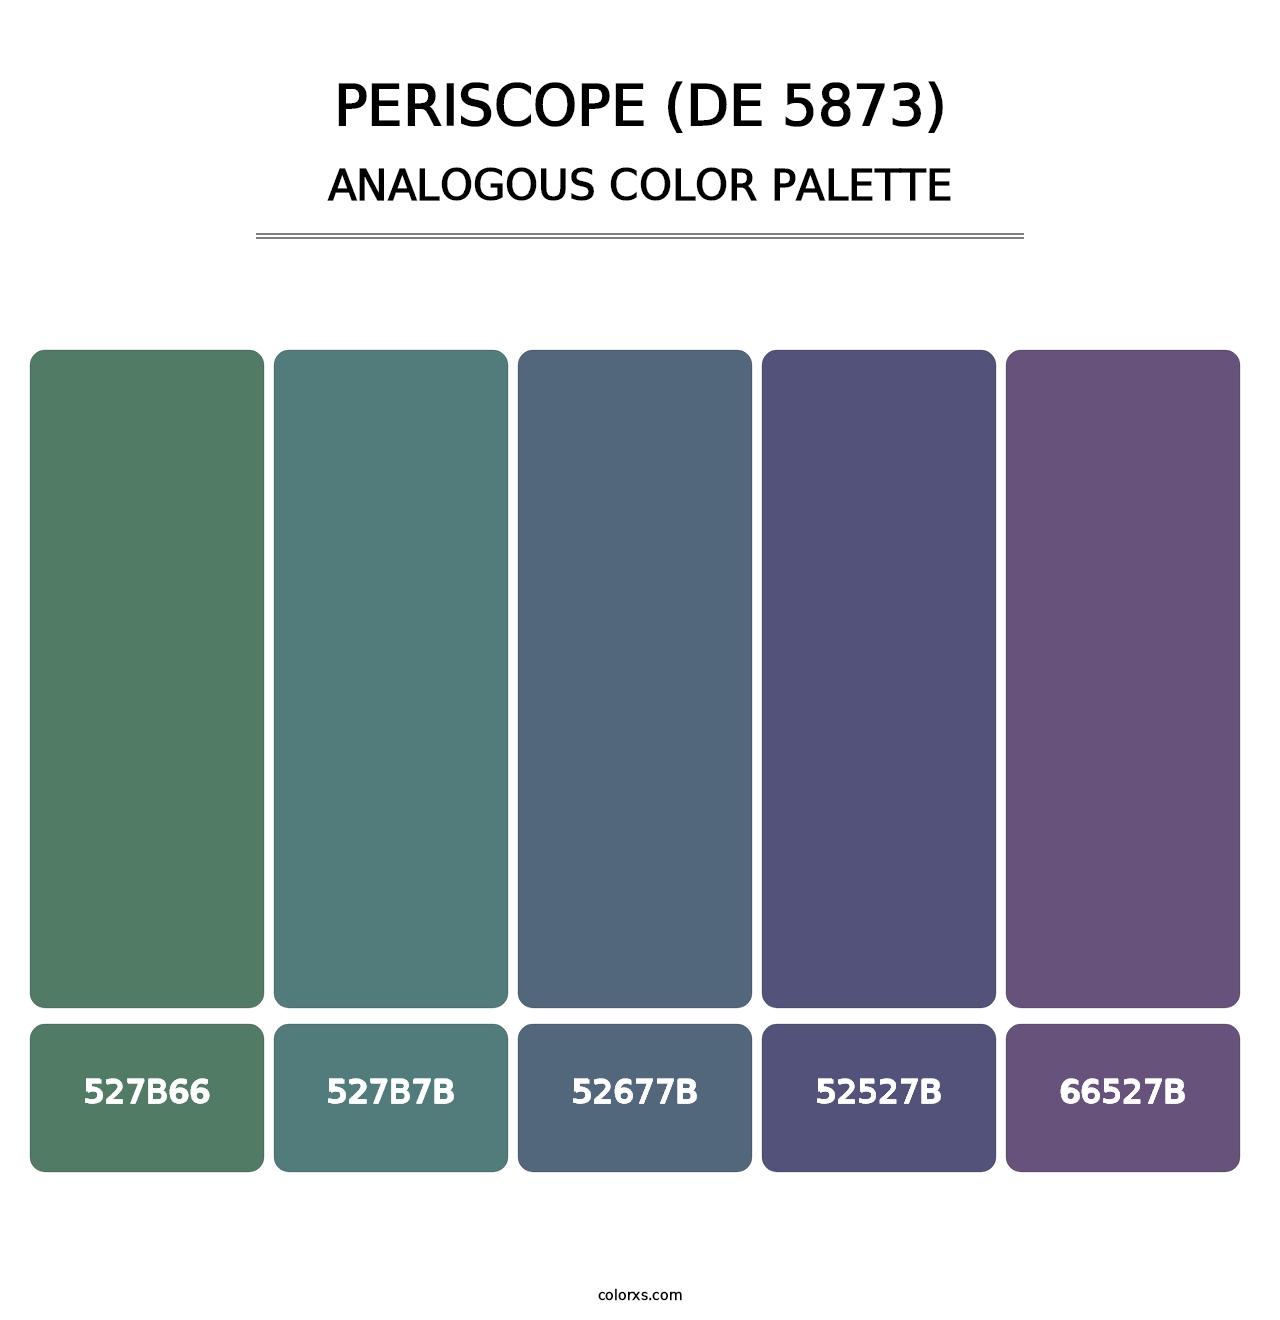 Periscope (DE 5873) - Analogous Color Palette